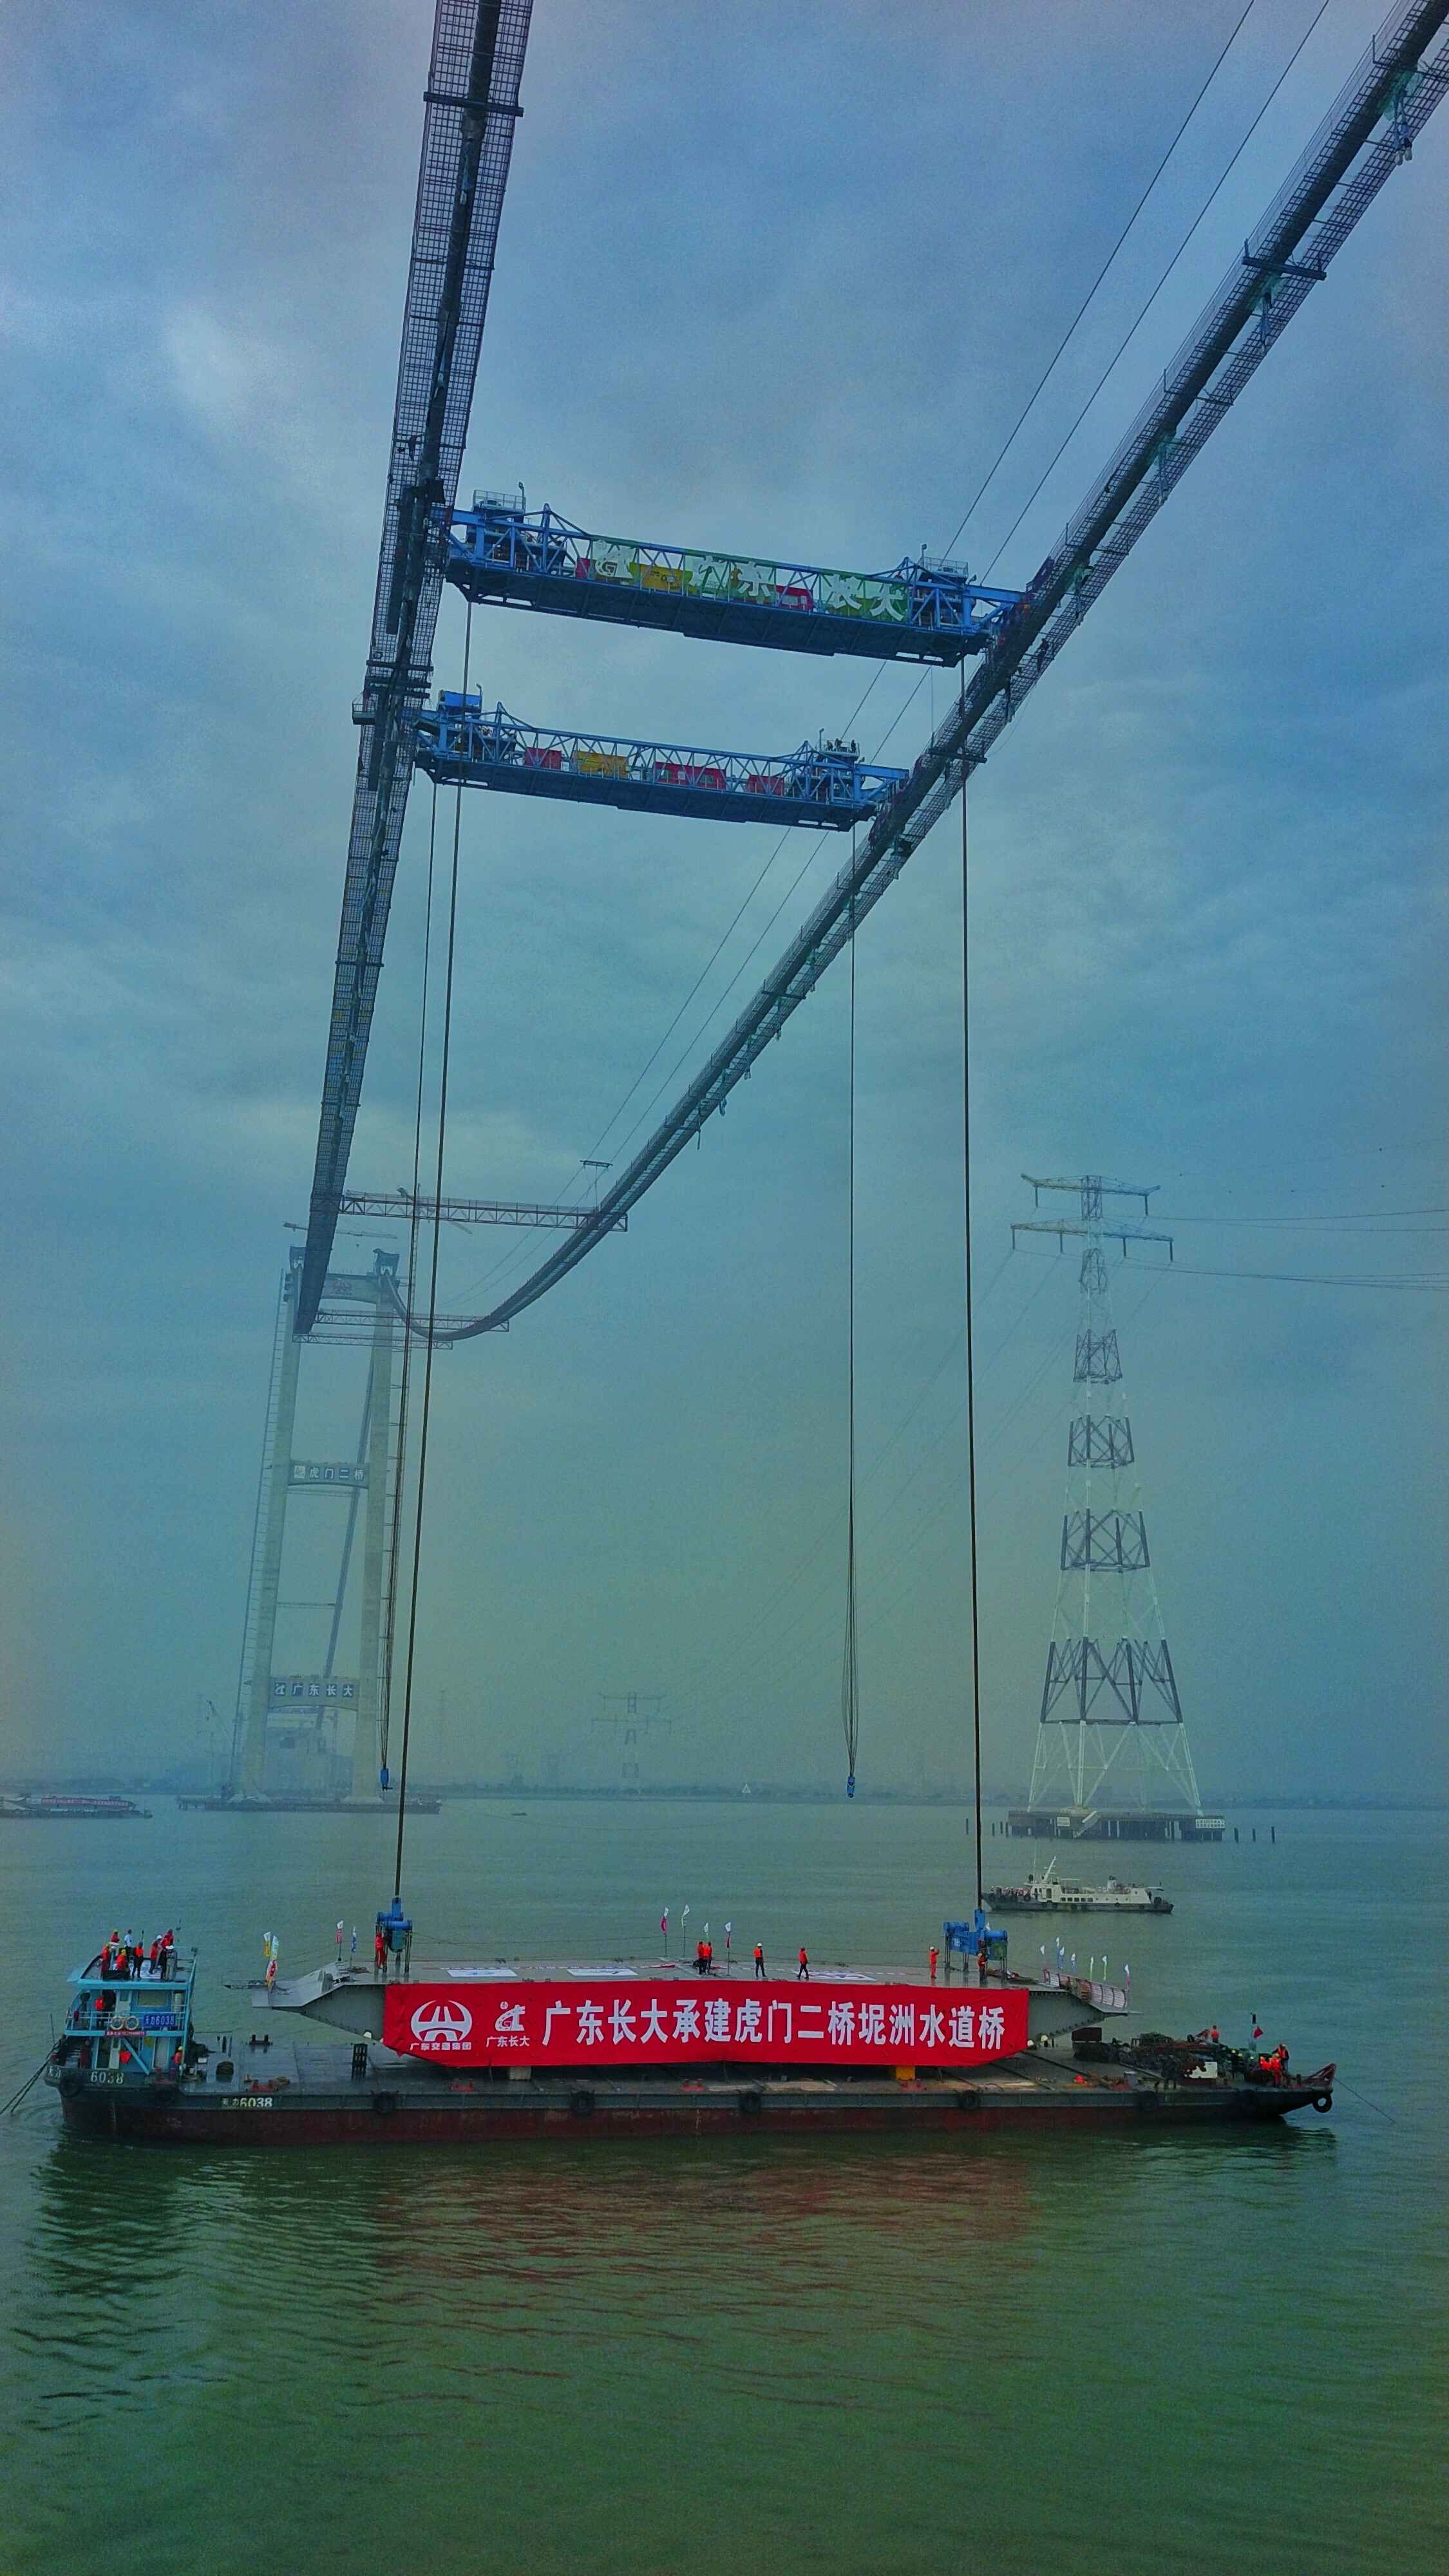 世界最大跨径钢箱梁悬索桥!首节钢箱梁成功吊装